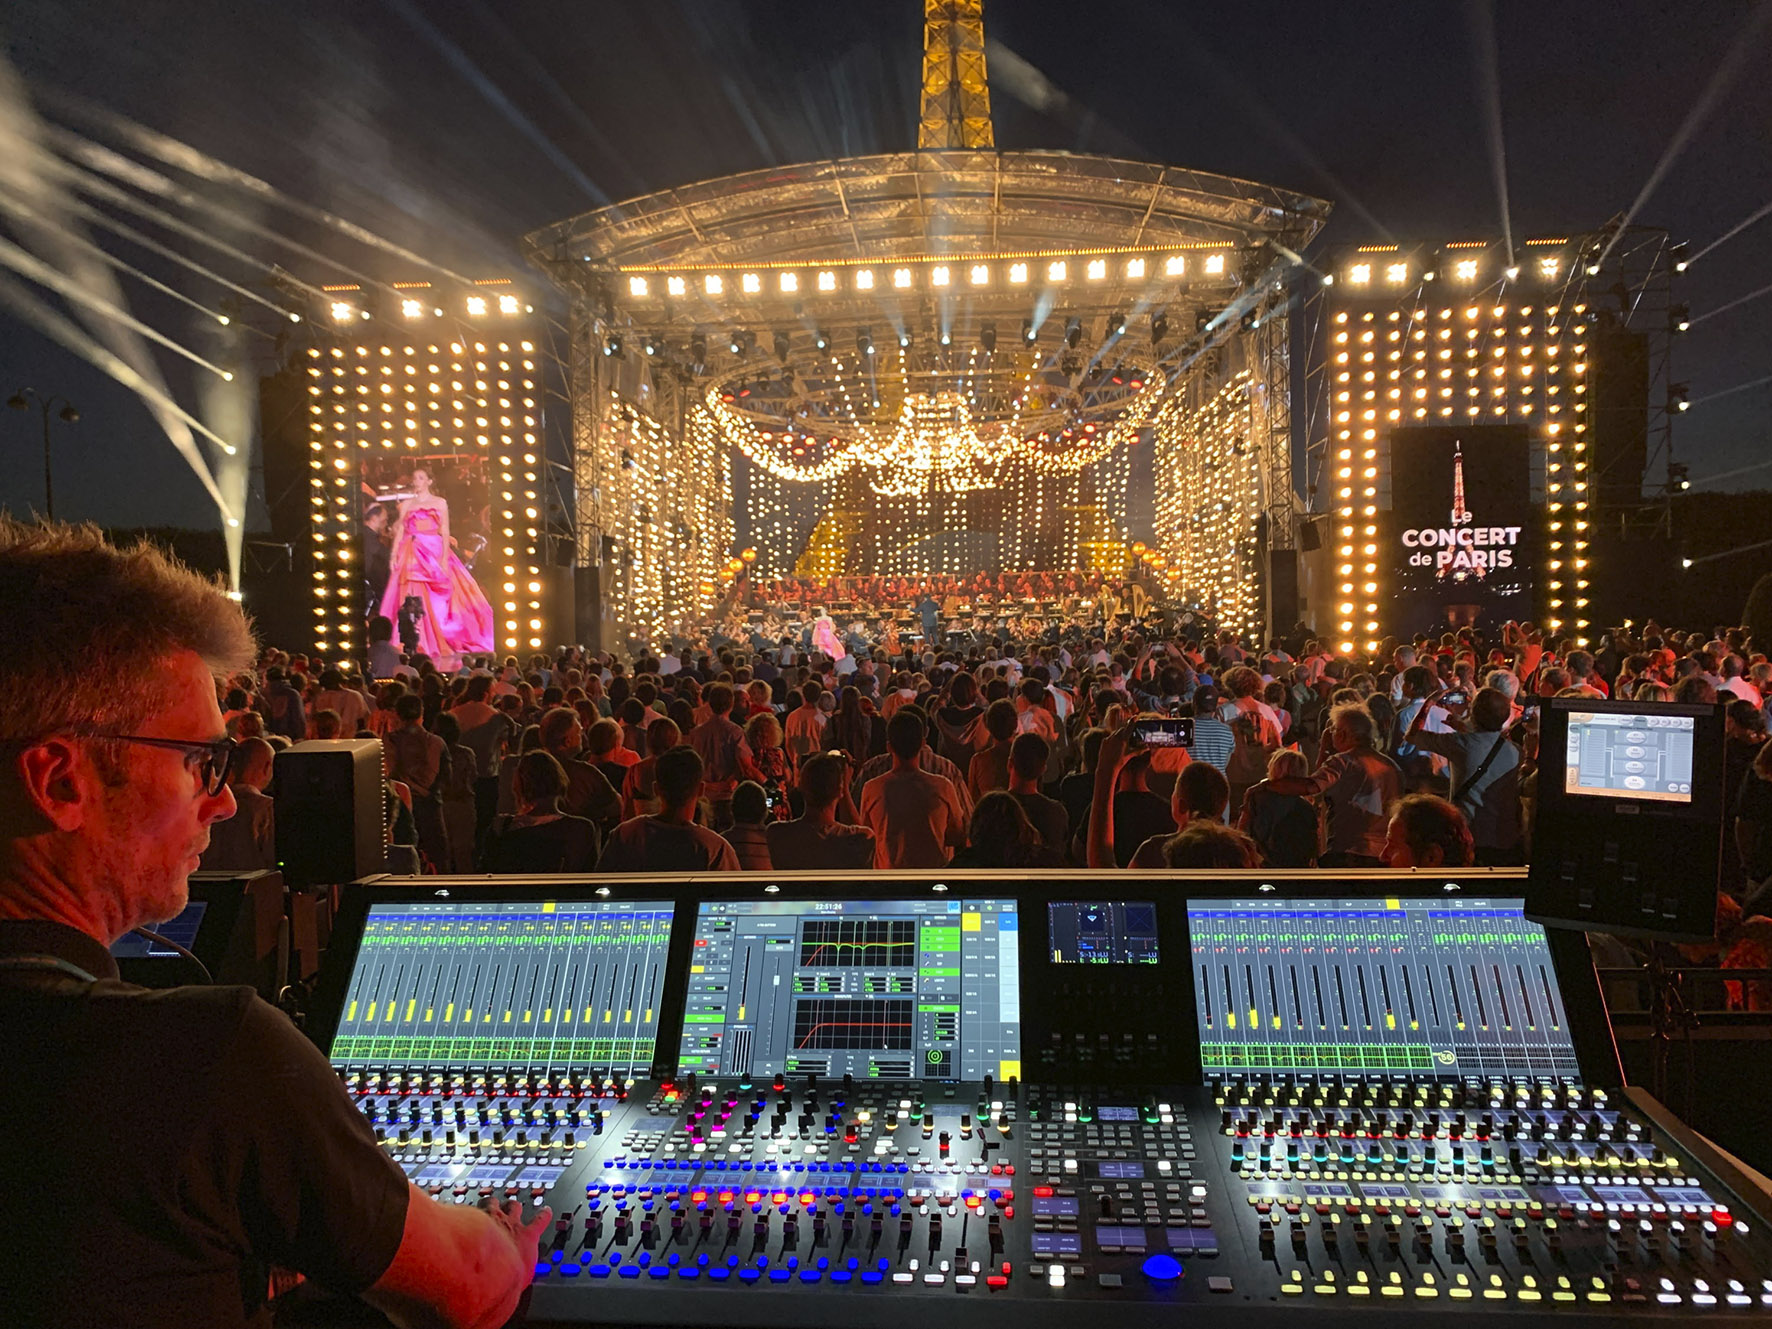 Lawo mc² Consoles To Mix The Concert de Paris